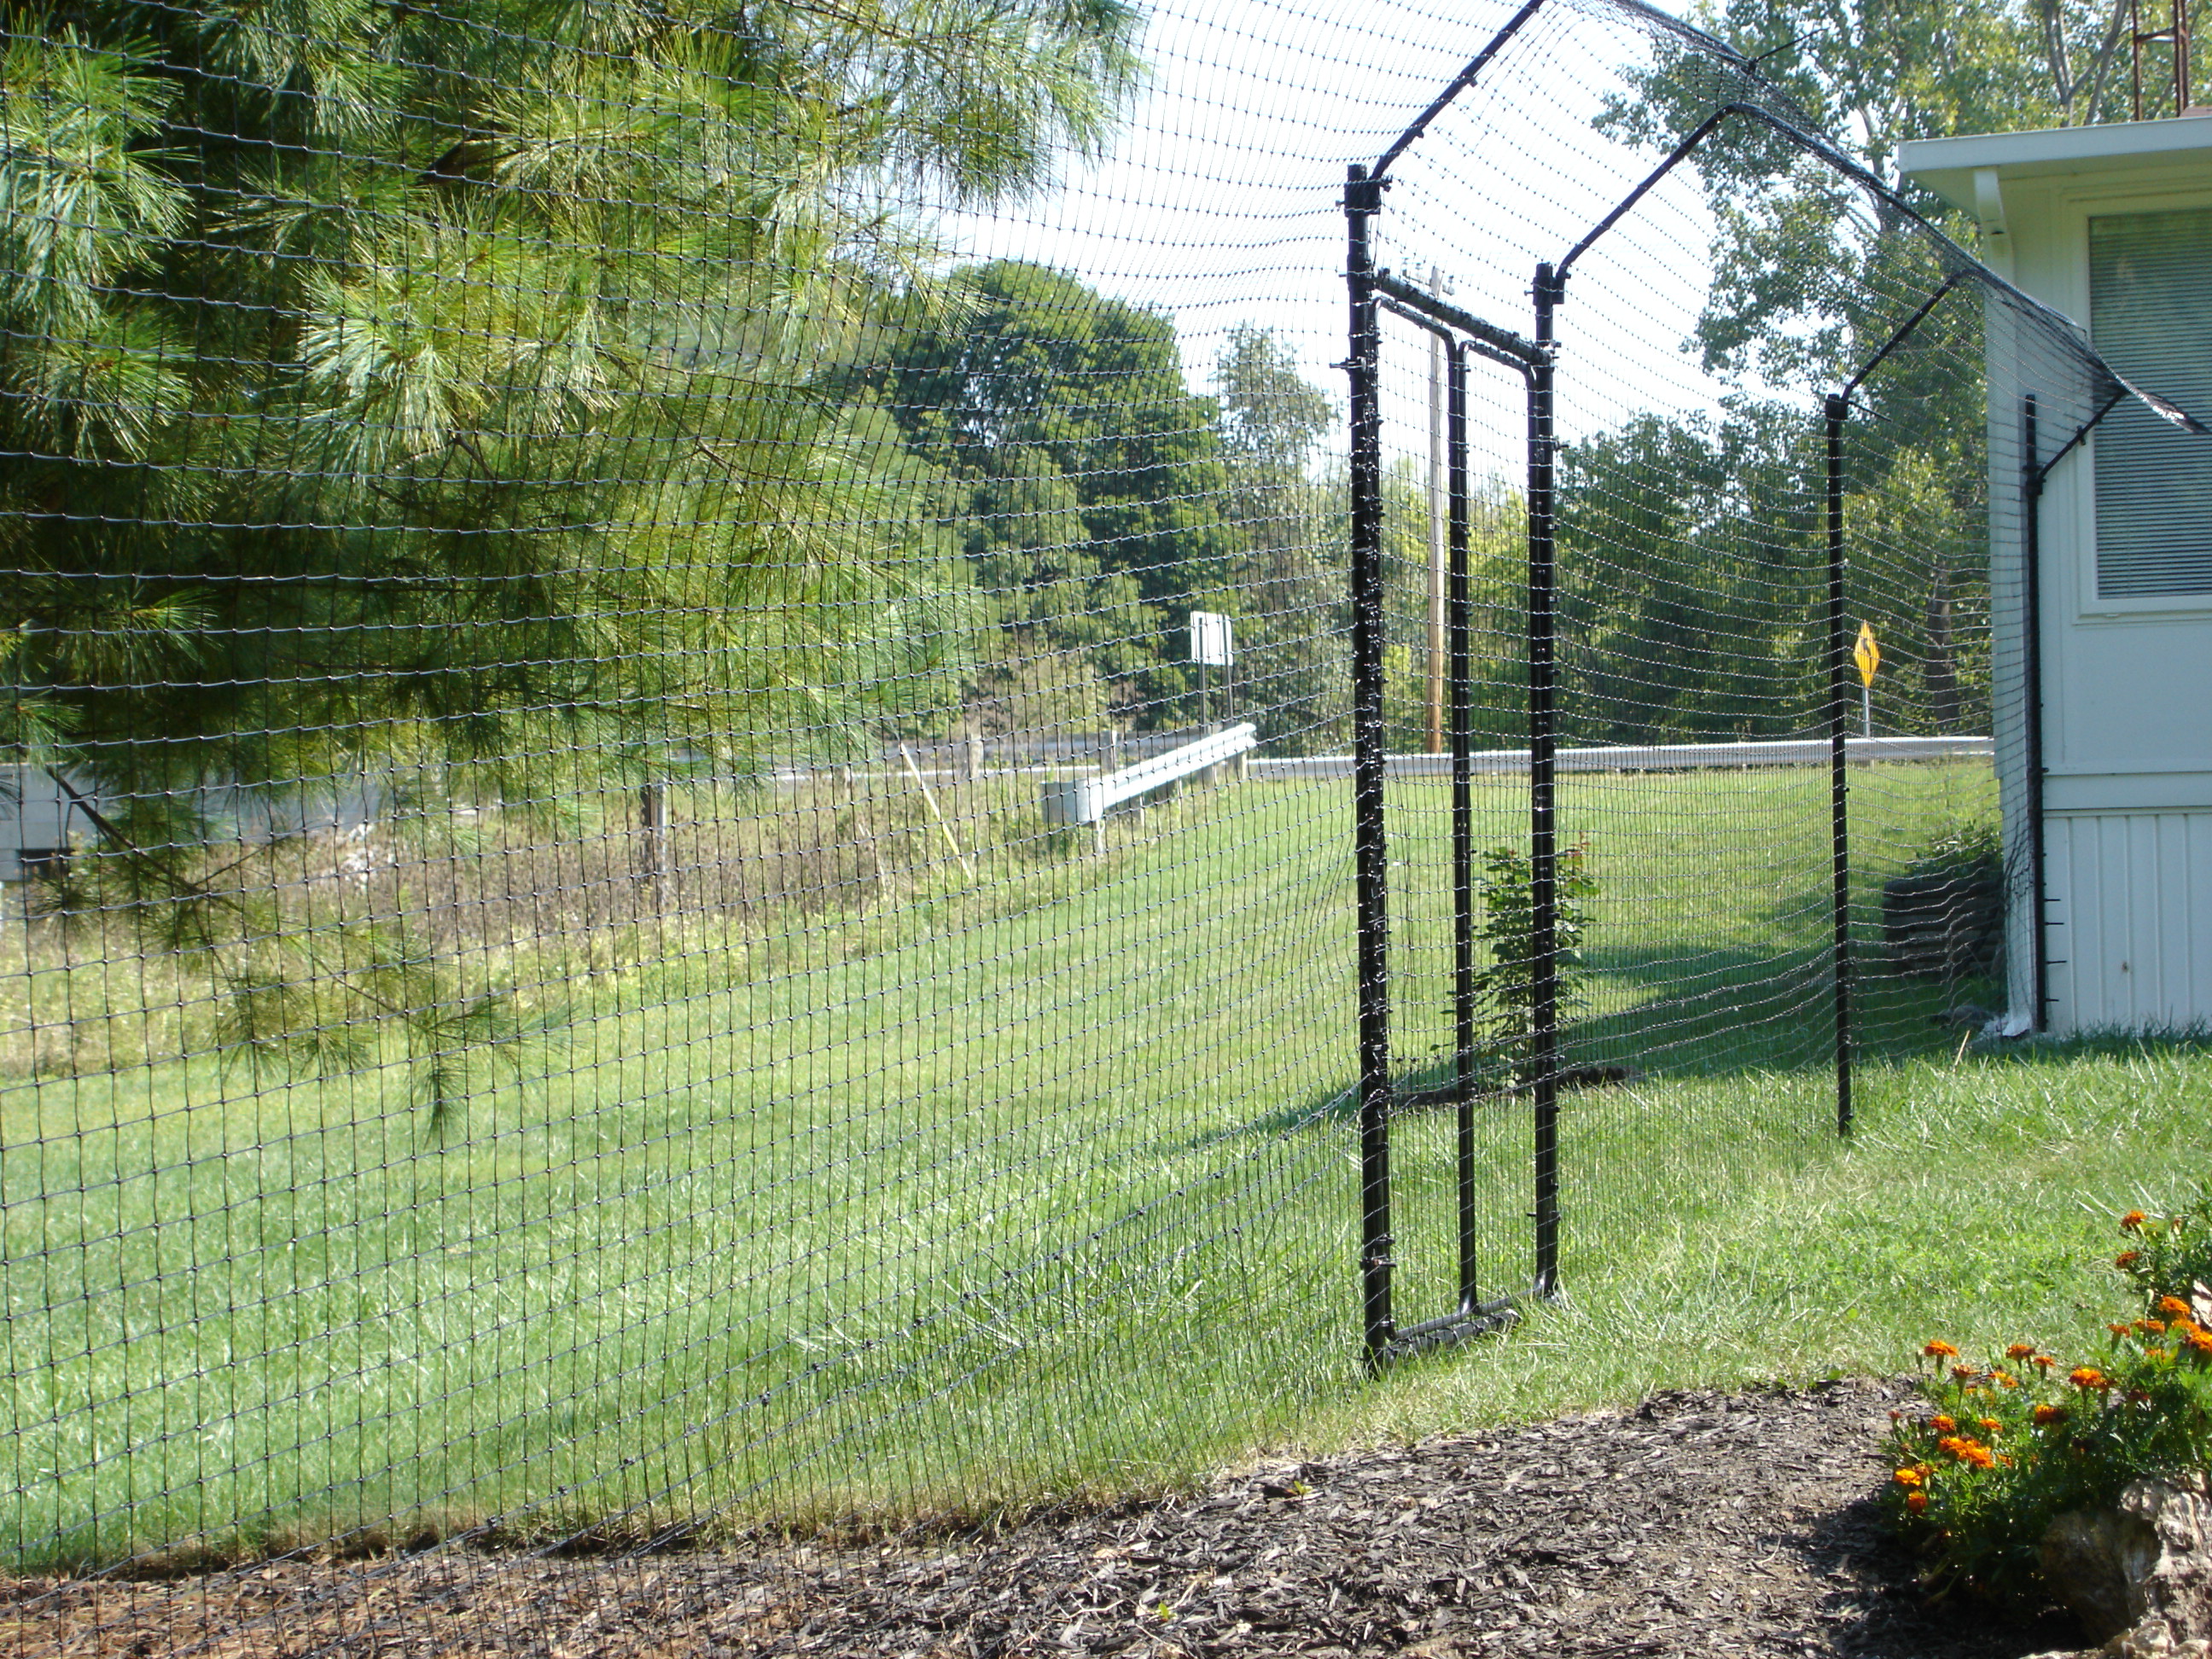 Original Cat Fence